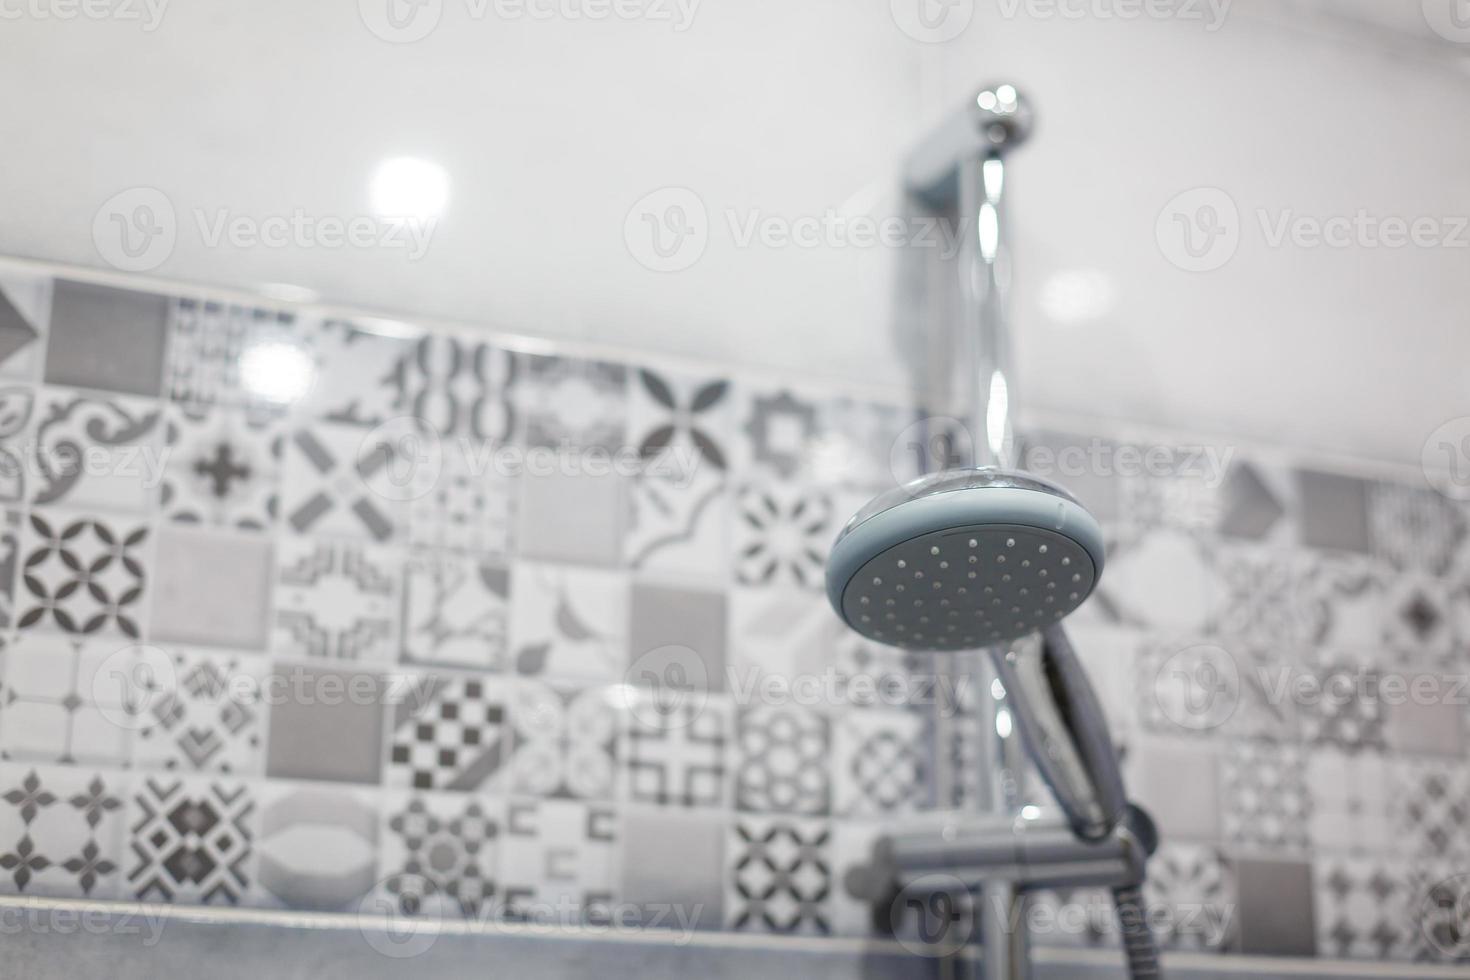 interior de la alcachofa de ducha moderna en el baño en casa diseño moderno de baño foto